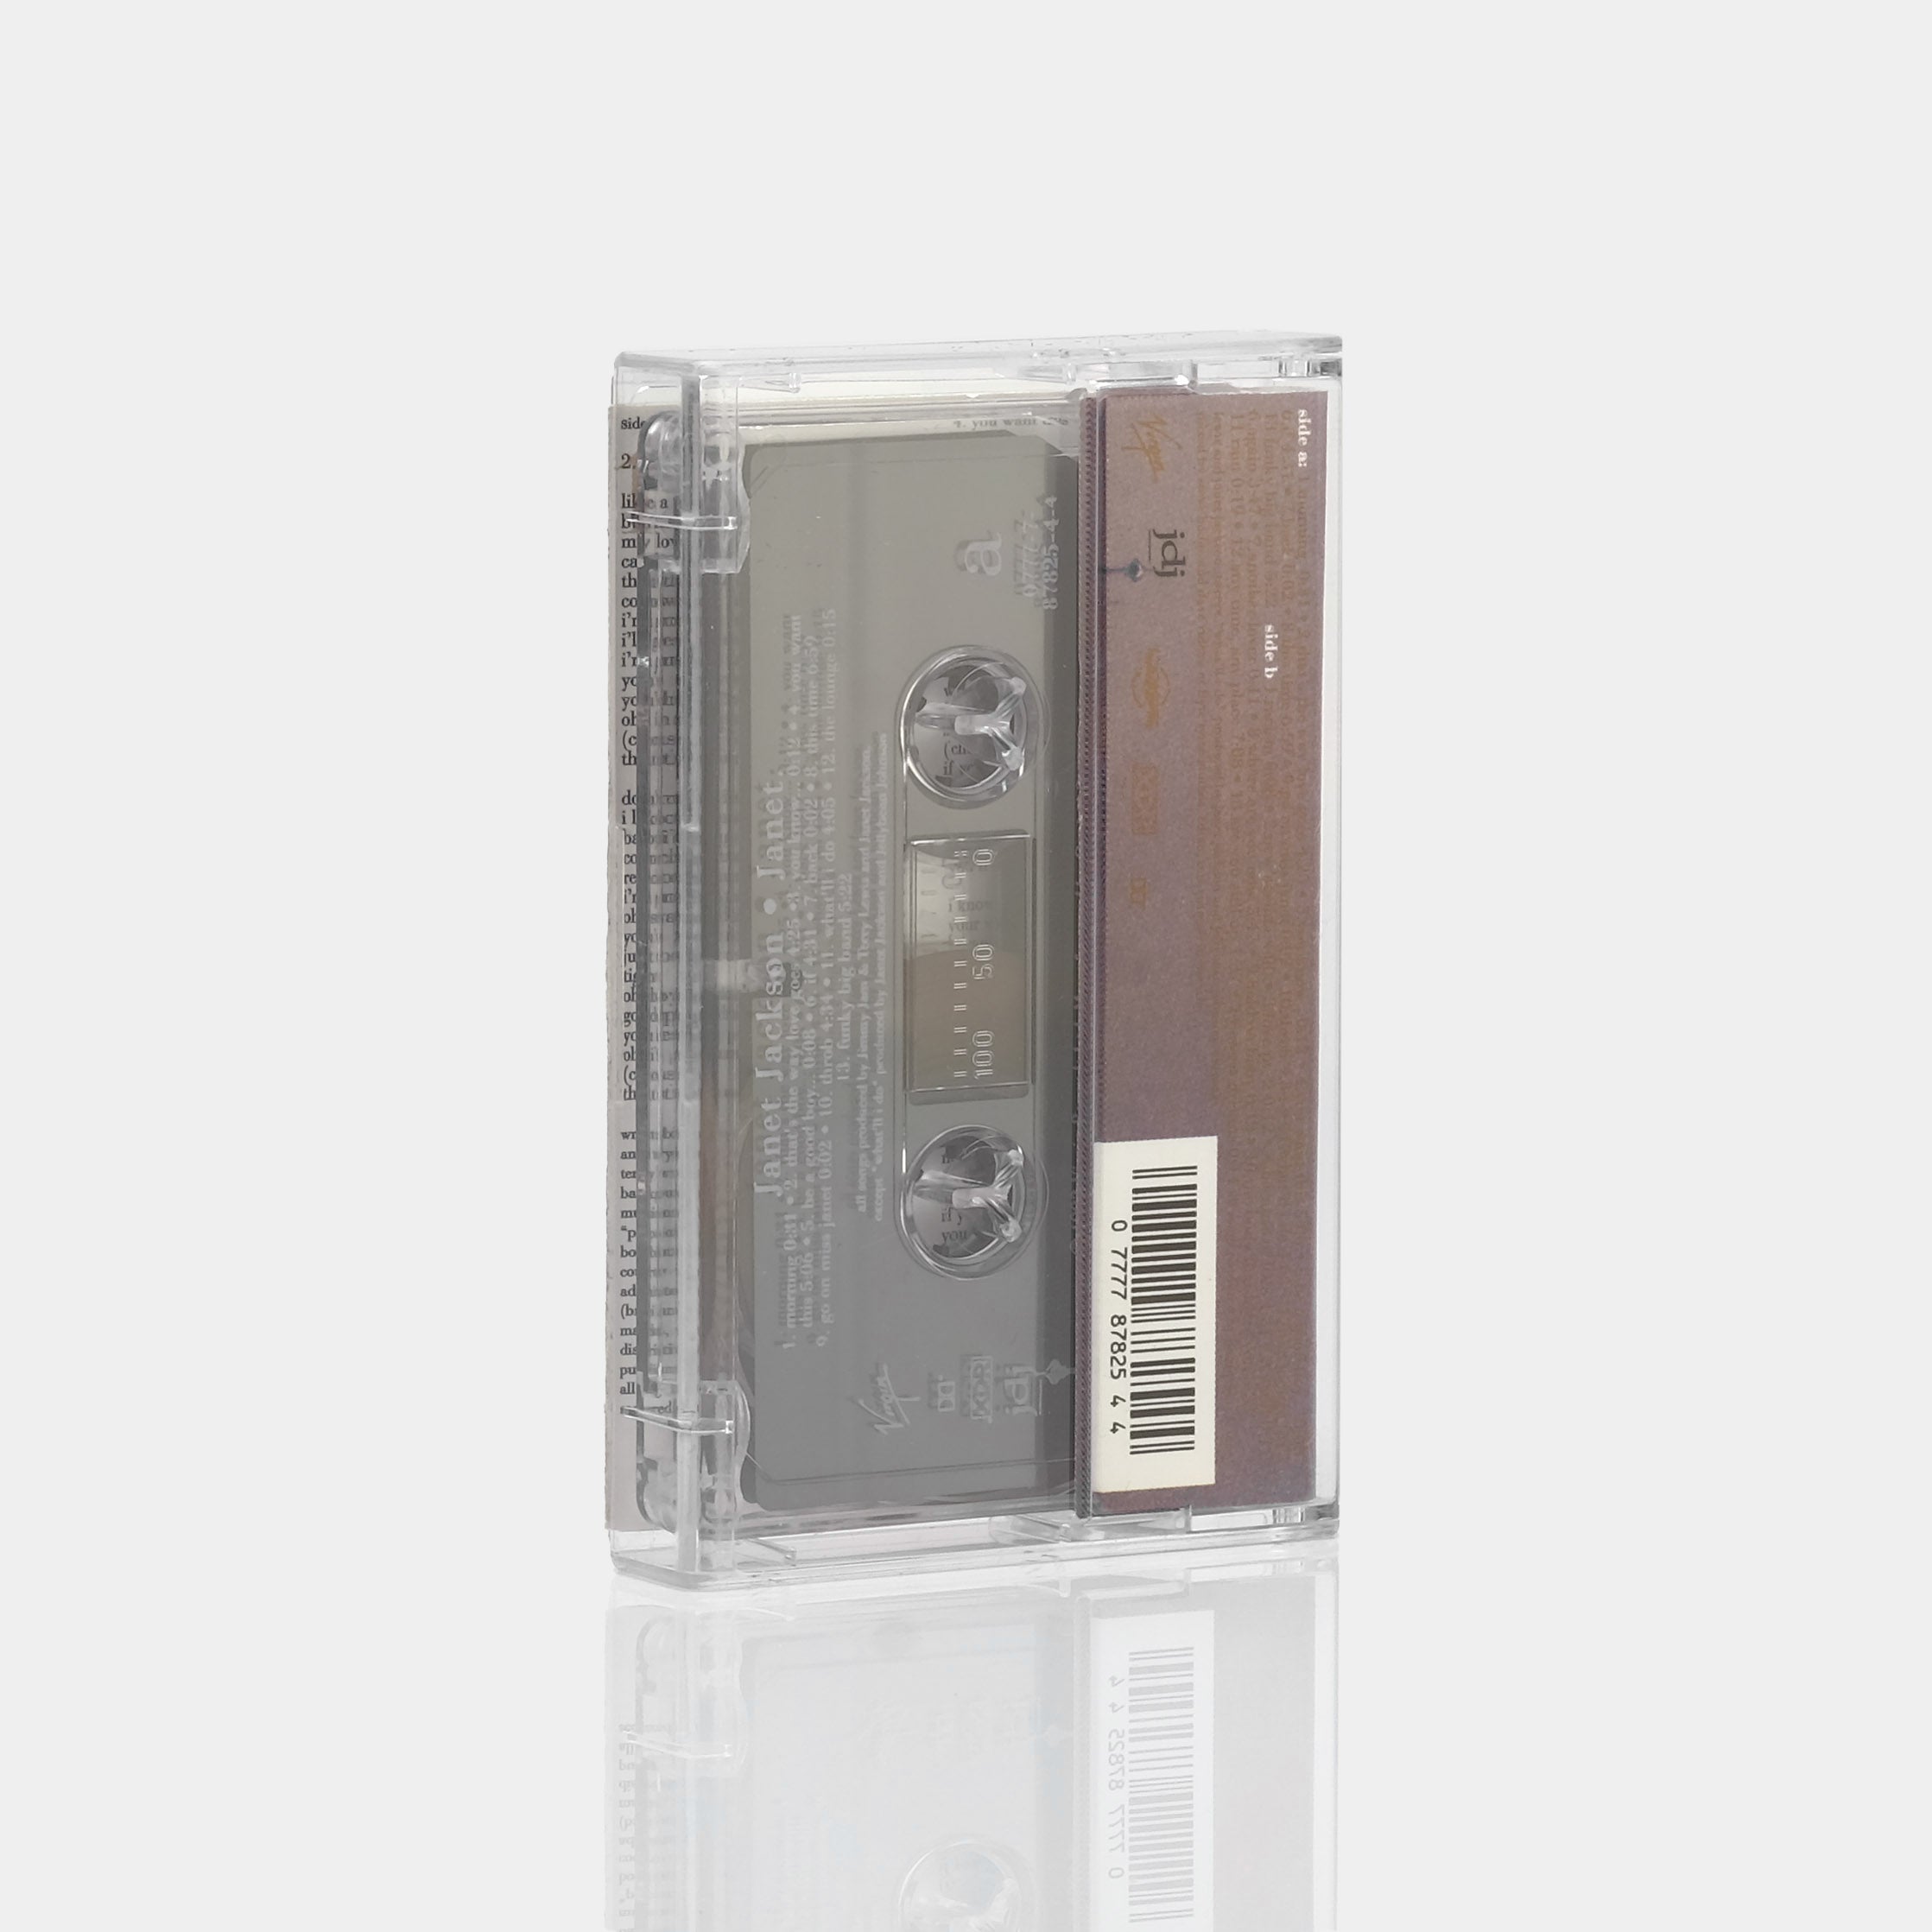 Janet Jackson - Janet Cassette Tape